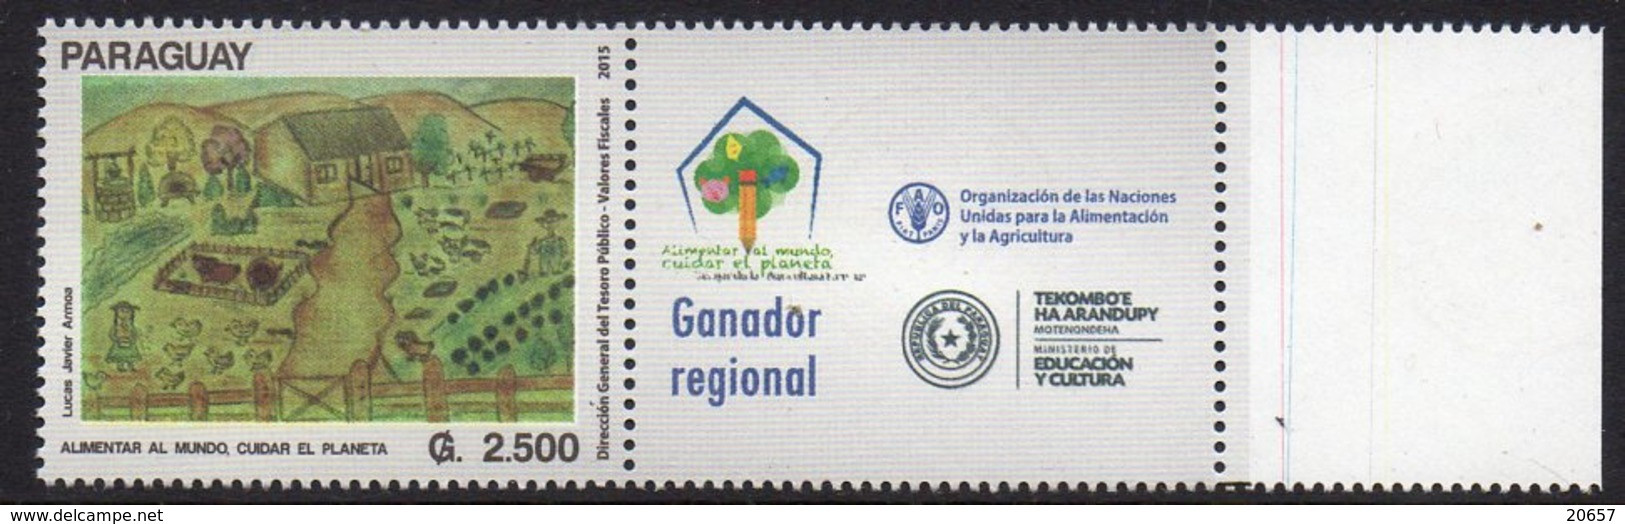 Paraguay 3203 FAO ONU Alimentation - Contra El Hambre